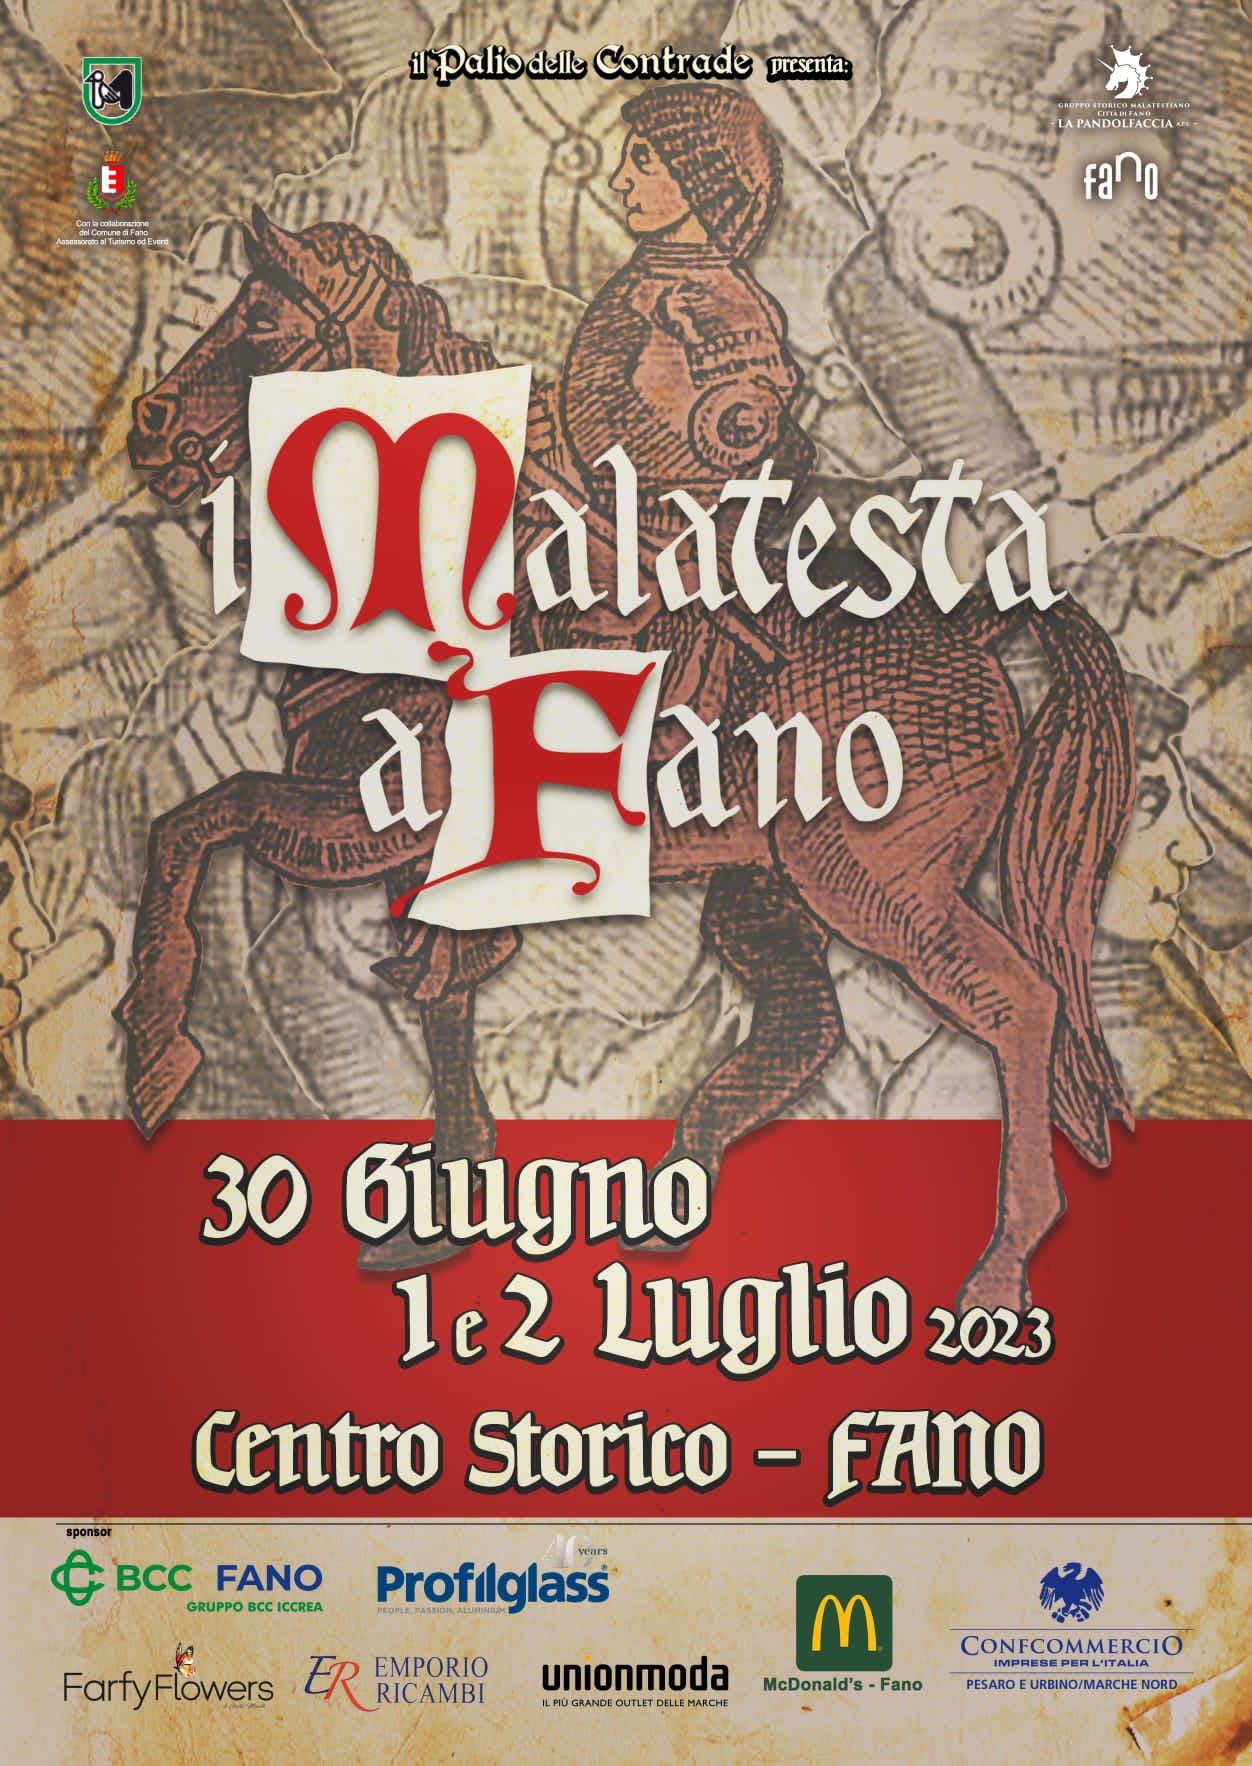 The Malatesta in Fano